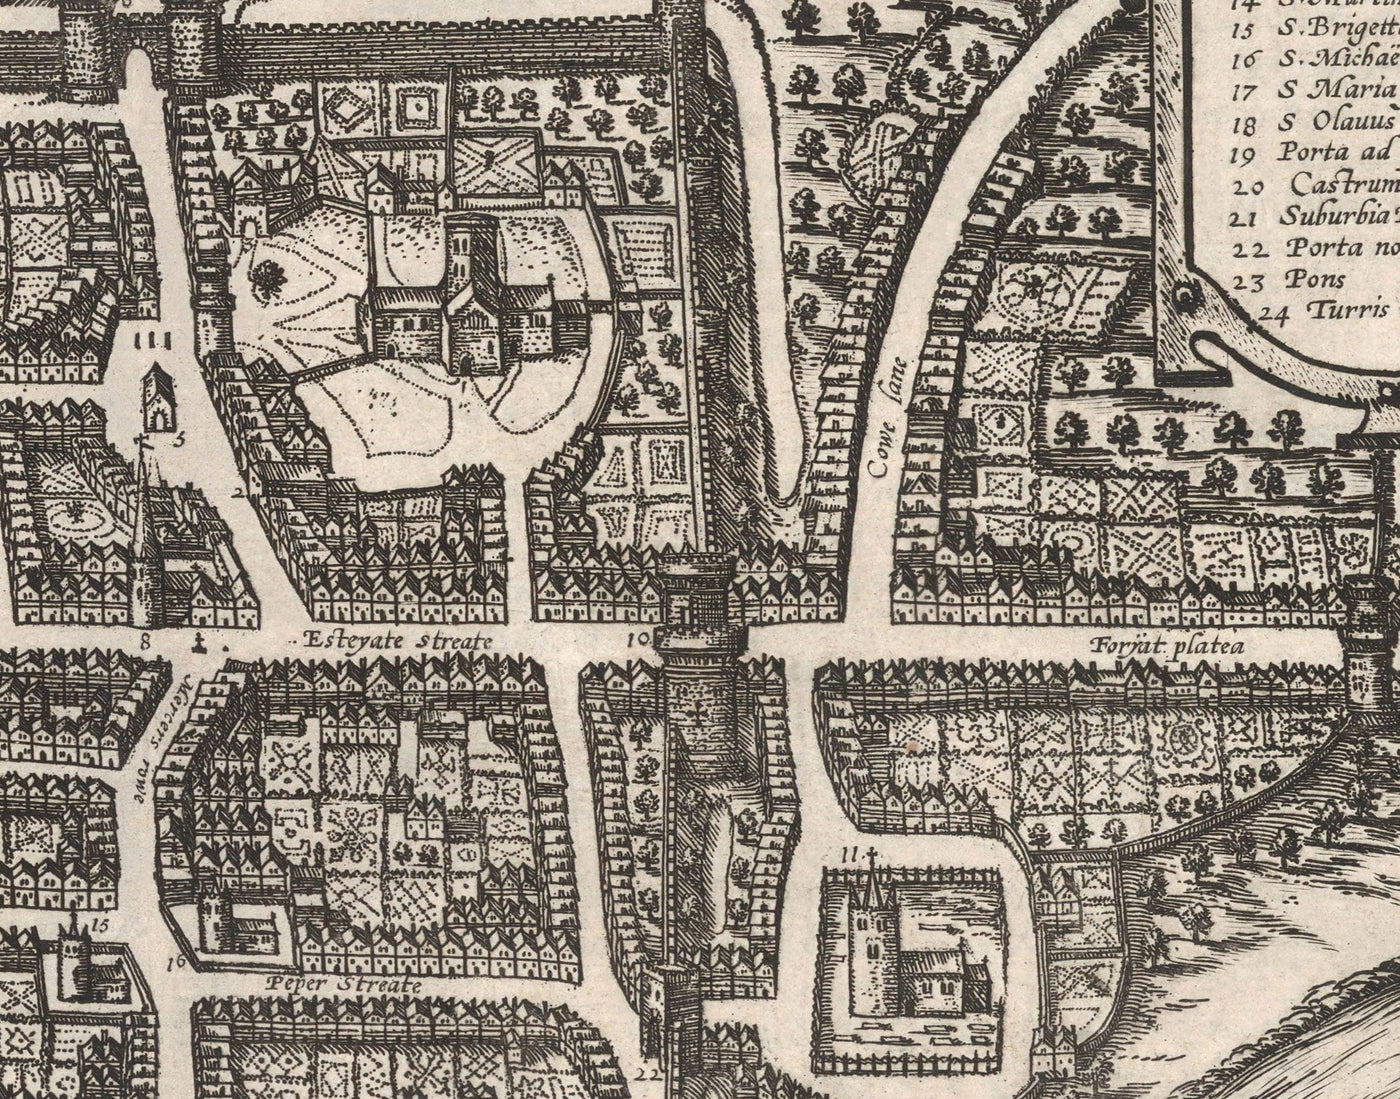 Alte Karte von Chester, Cheshire 1581 von Georg Braun - Burg, Kathedrale, Römische Stadtmauern